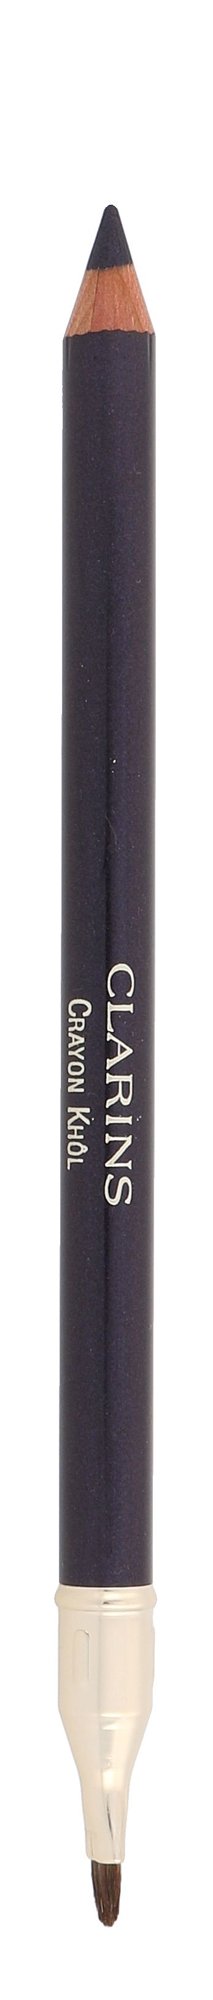 Clarins Long-Lasting Eye Pencil 1,05g akių pieštukas